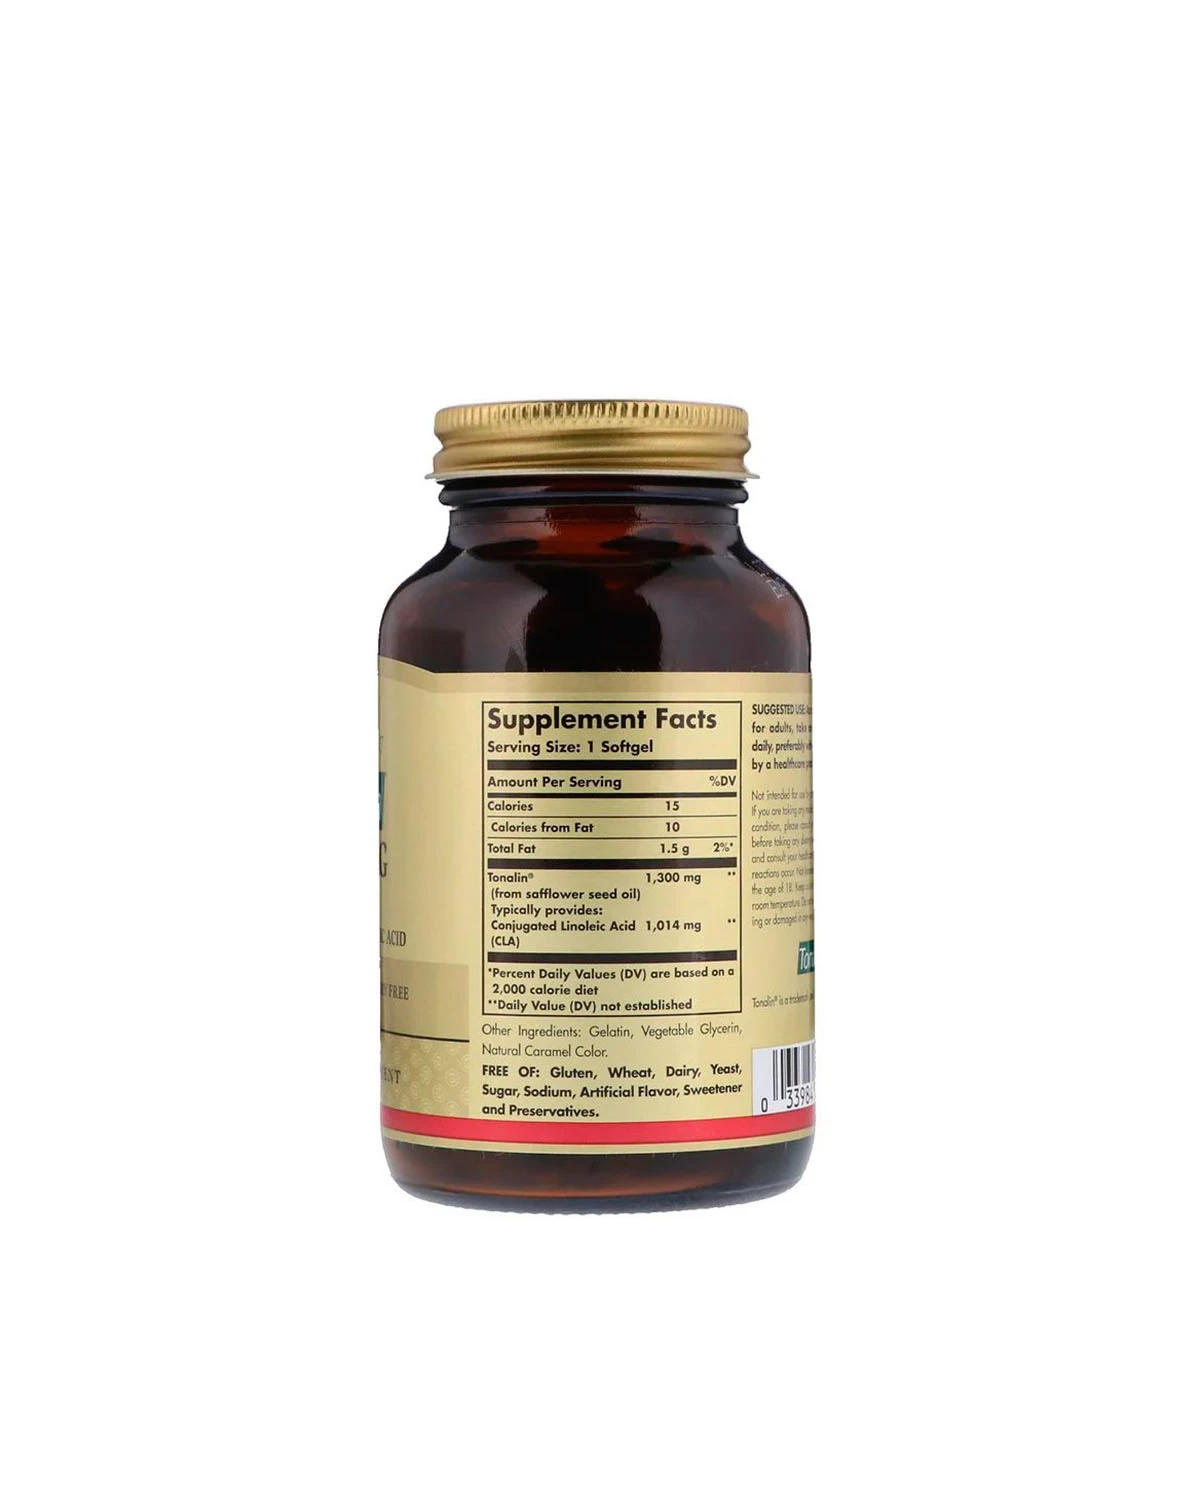 Тоналин КЛК 1300 мг | 60 кап Solgar